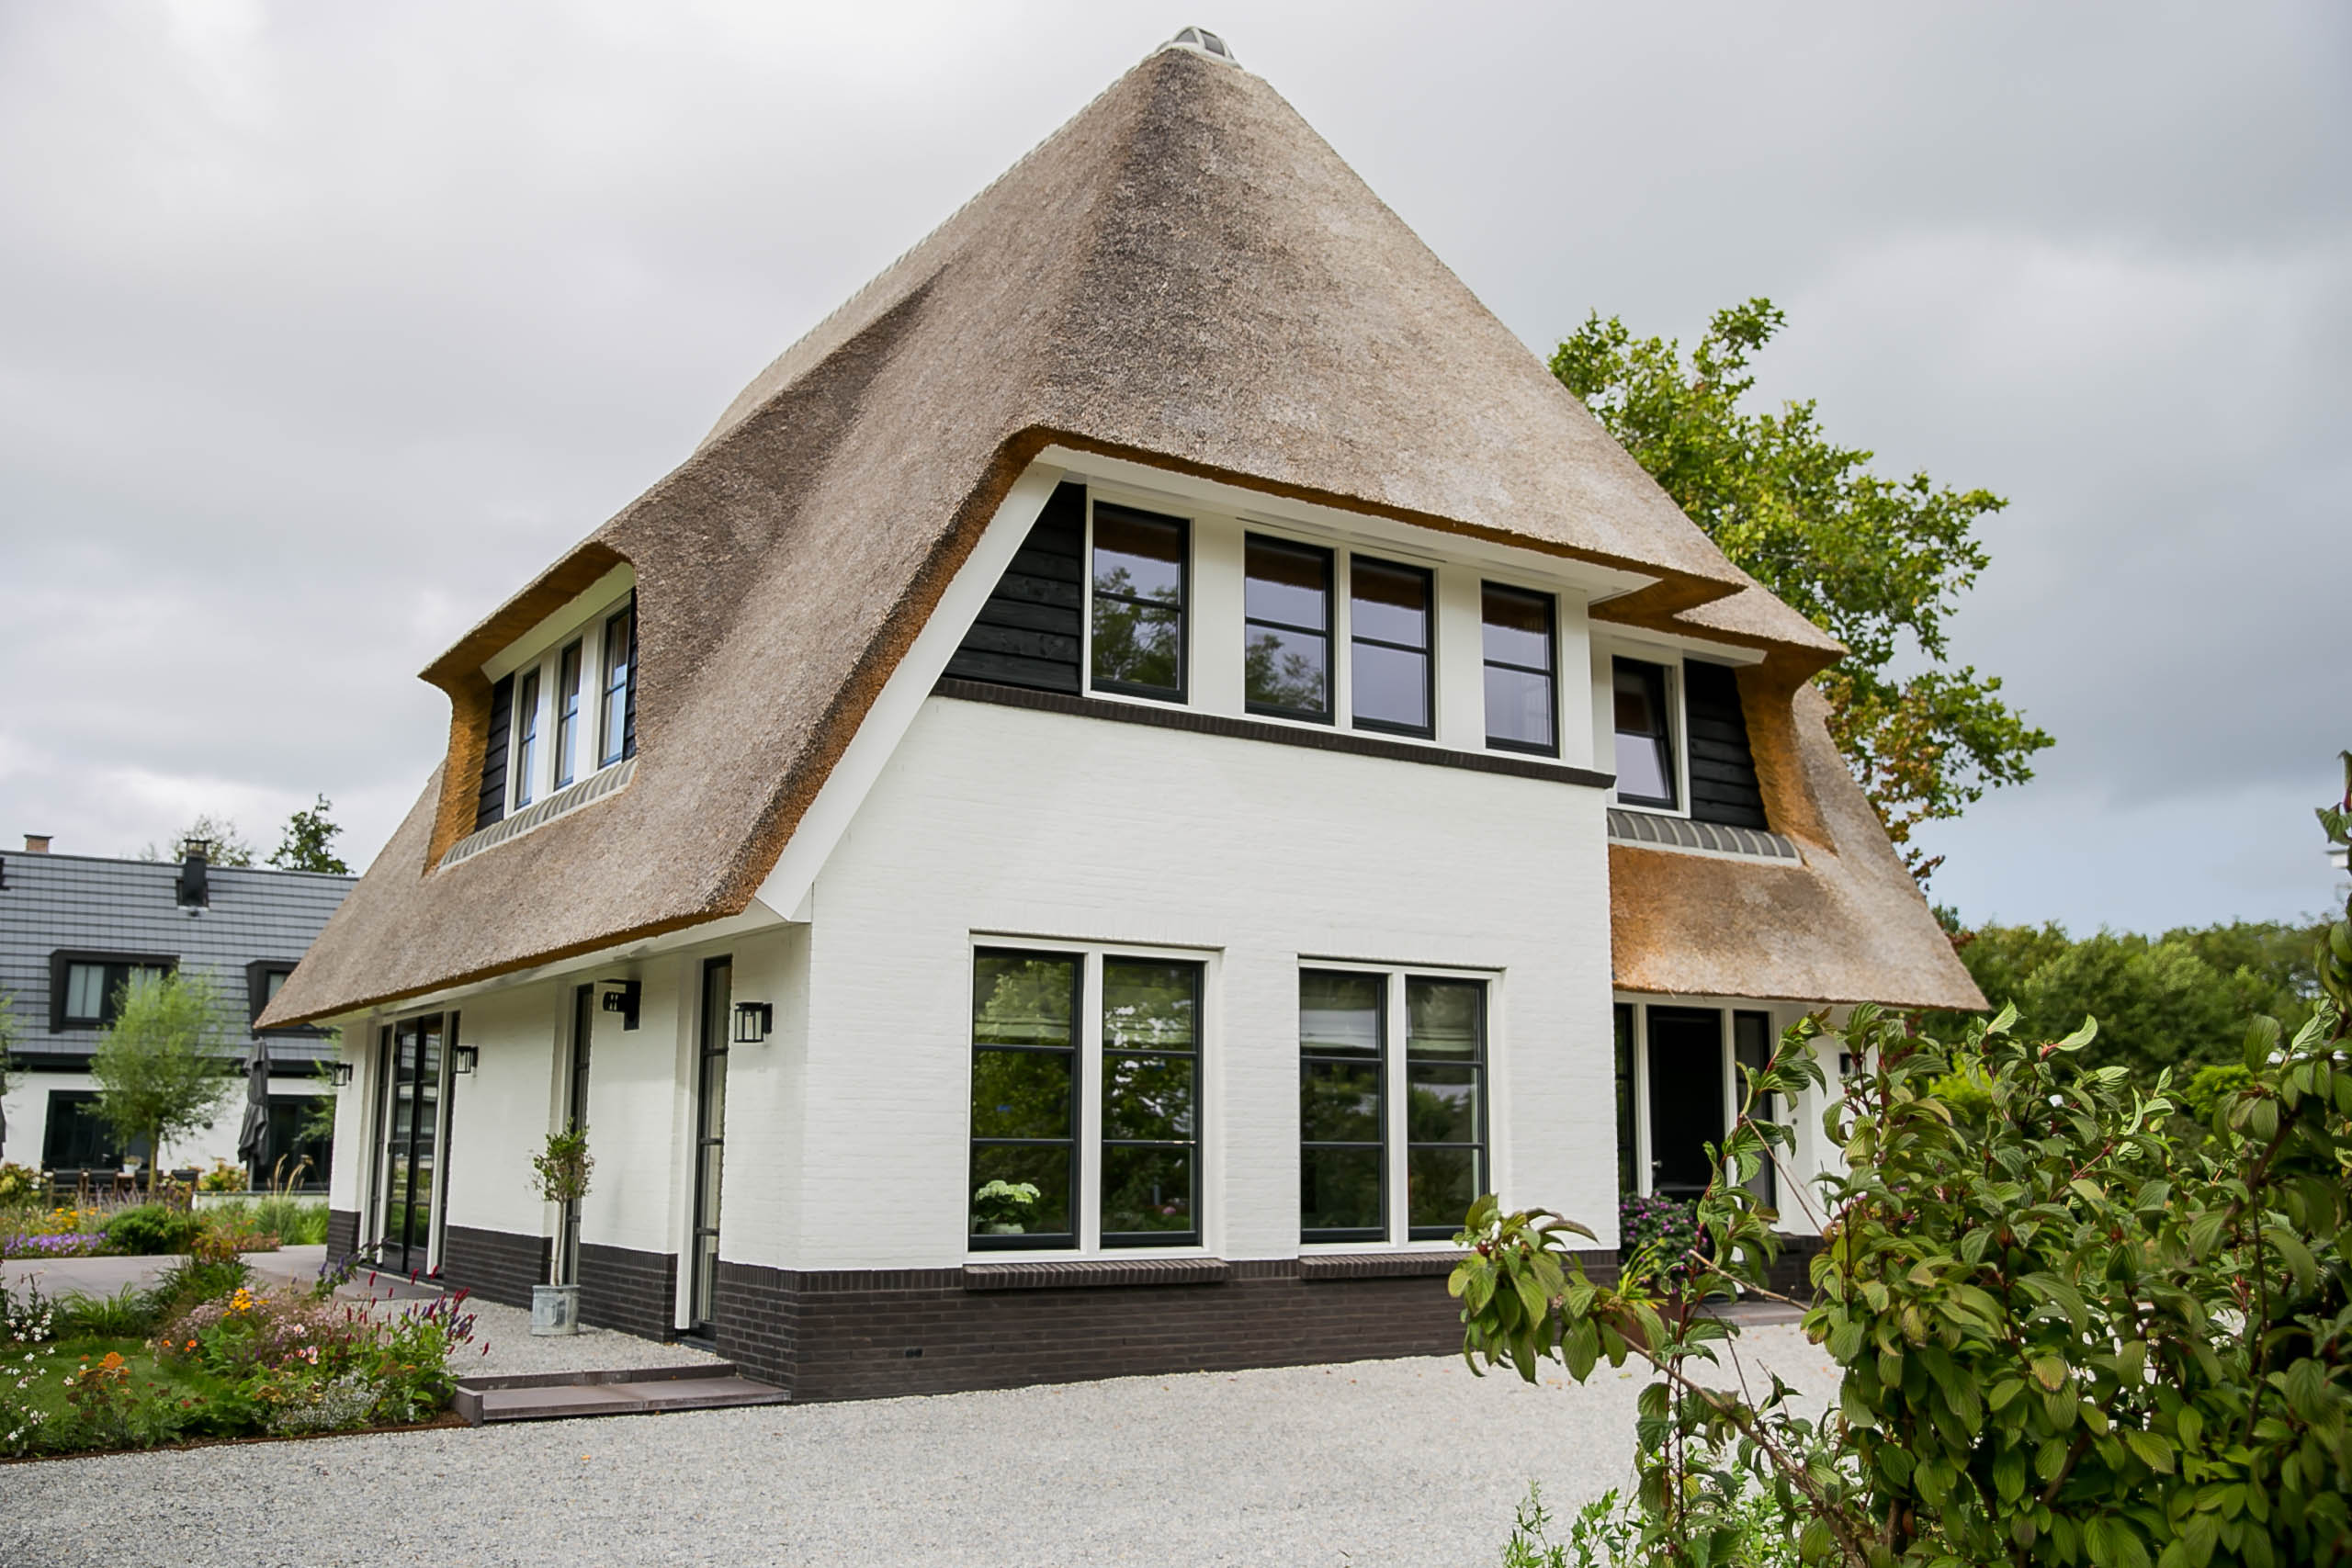 Foto: Exterieur villa Boswitje te Noordwijk   Architectuurwonen  2 